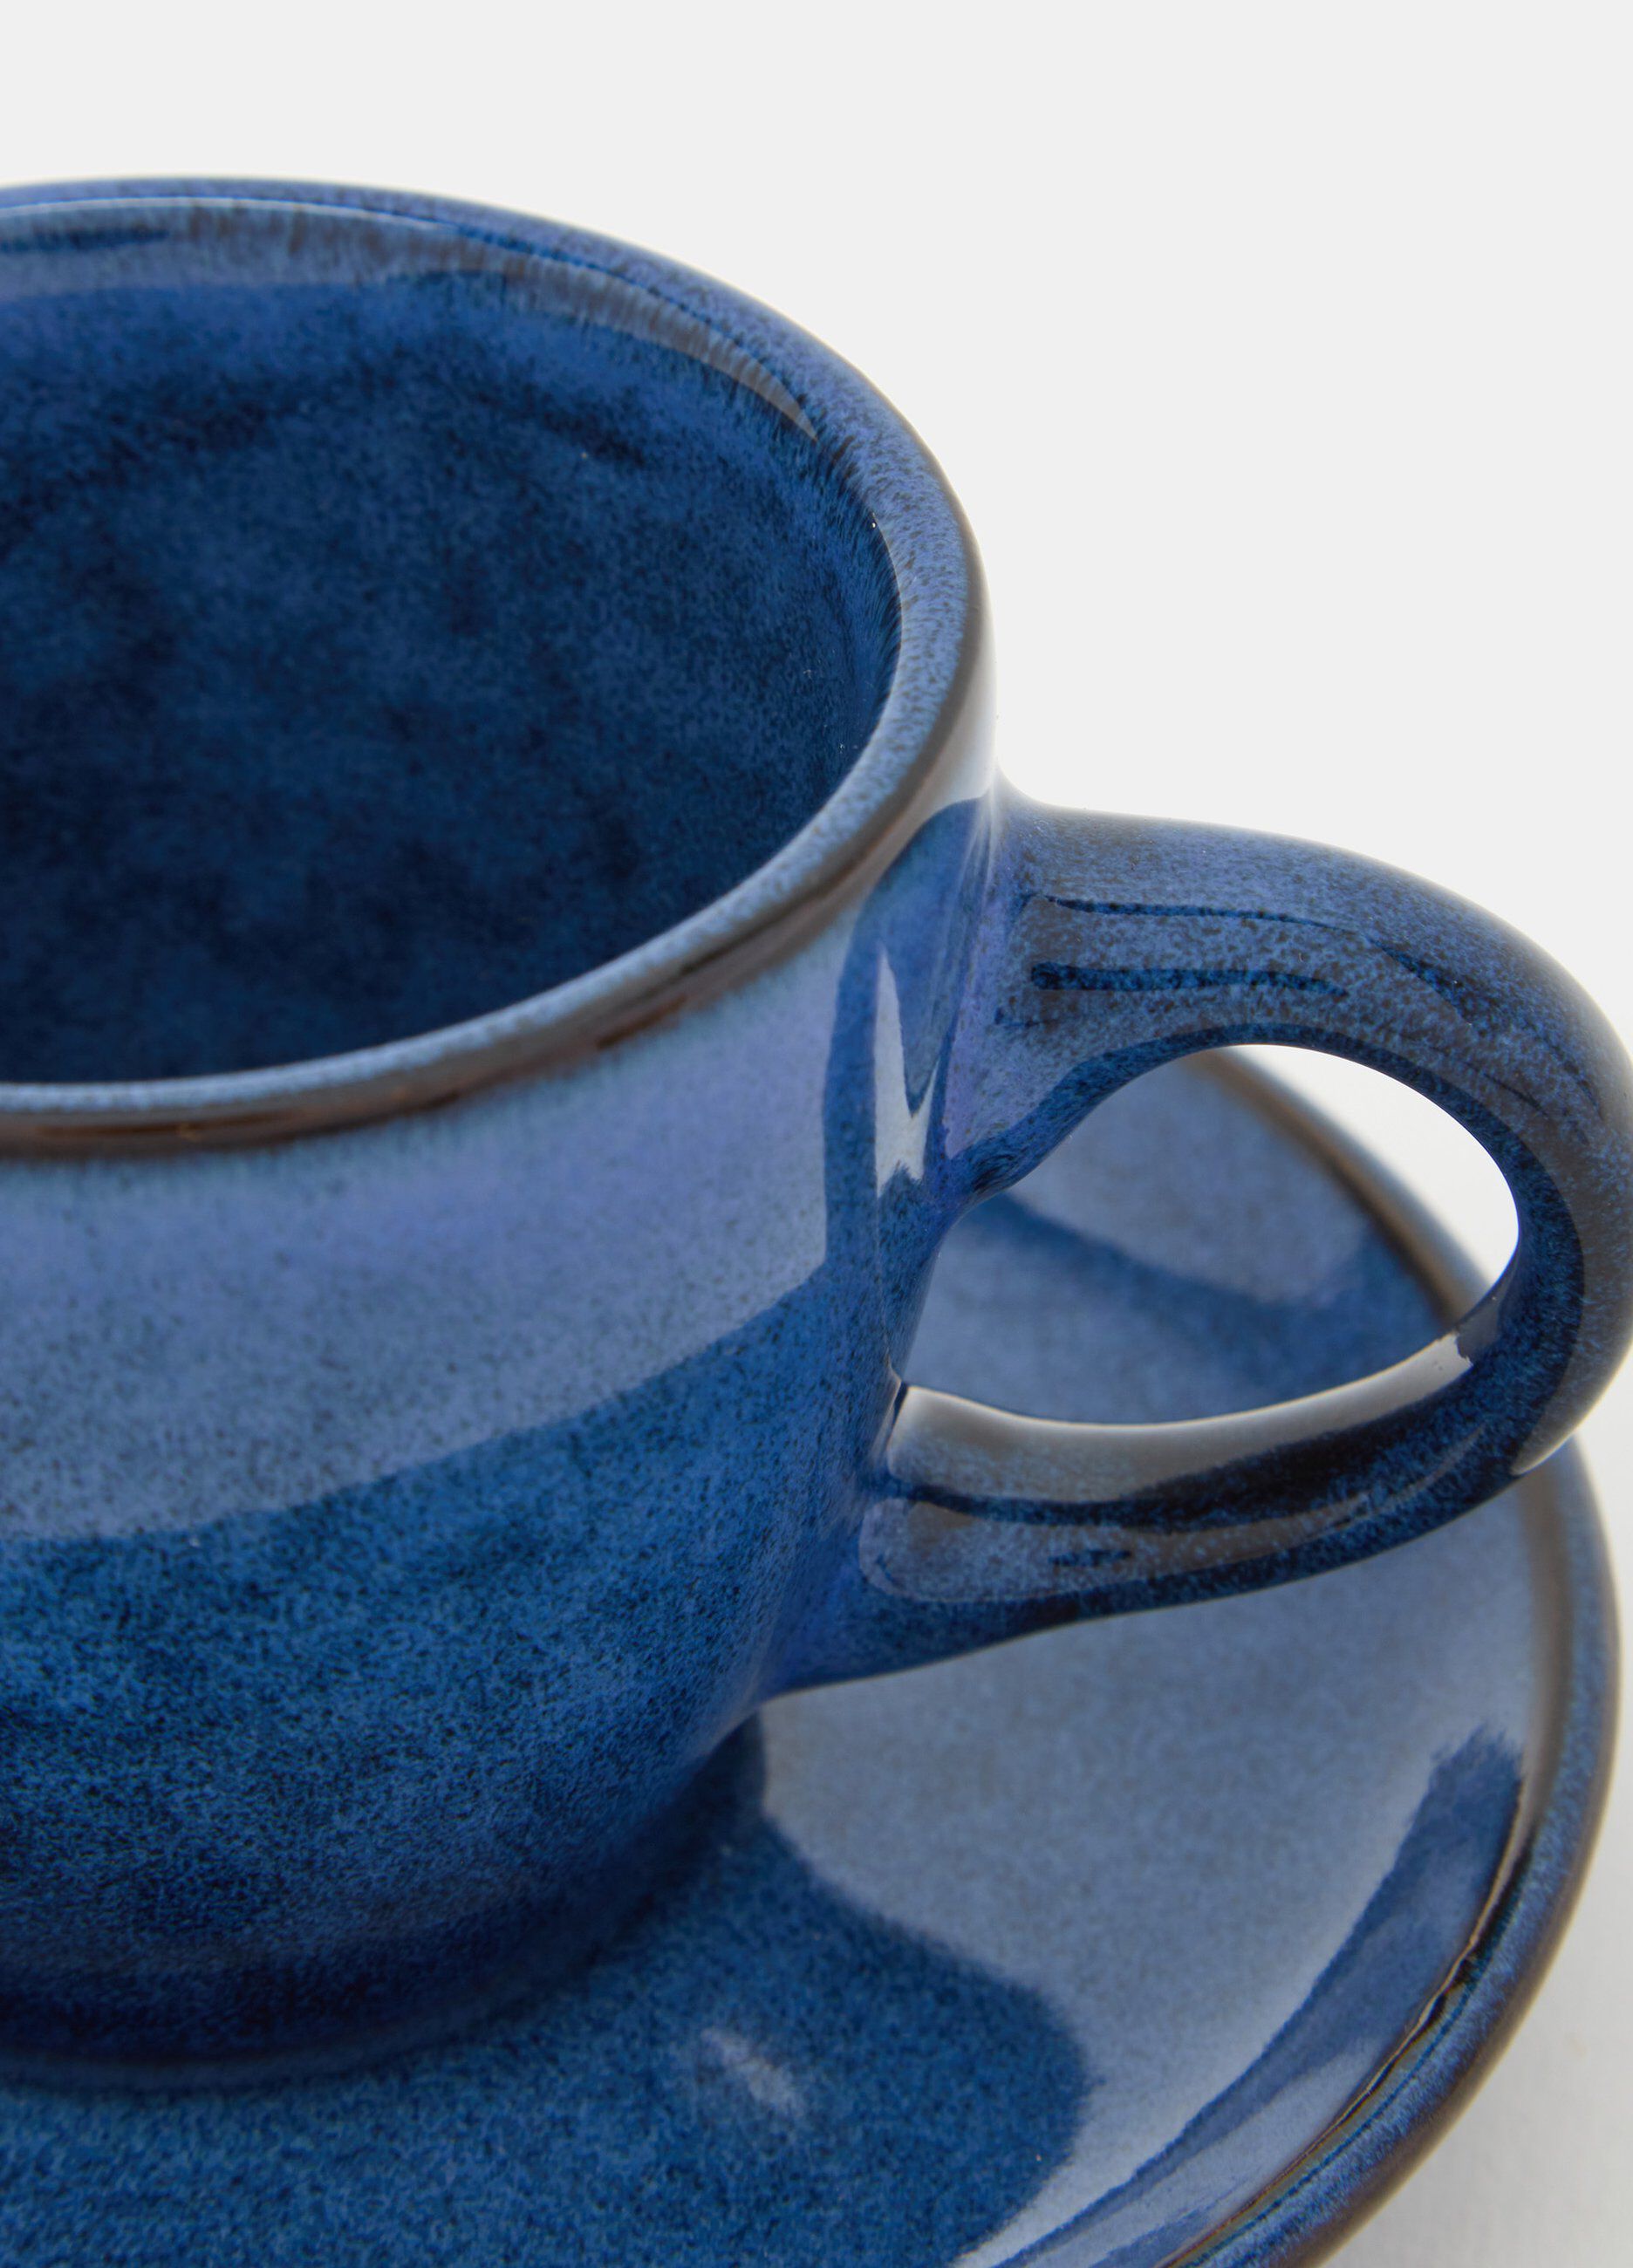 Tazzina da caffè in ceramica